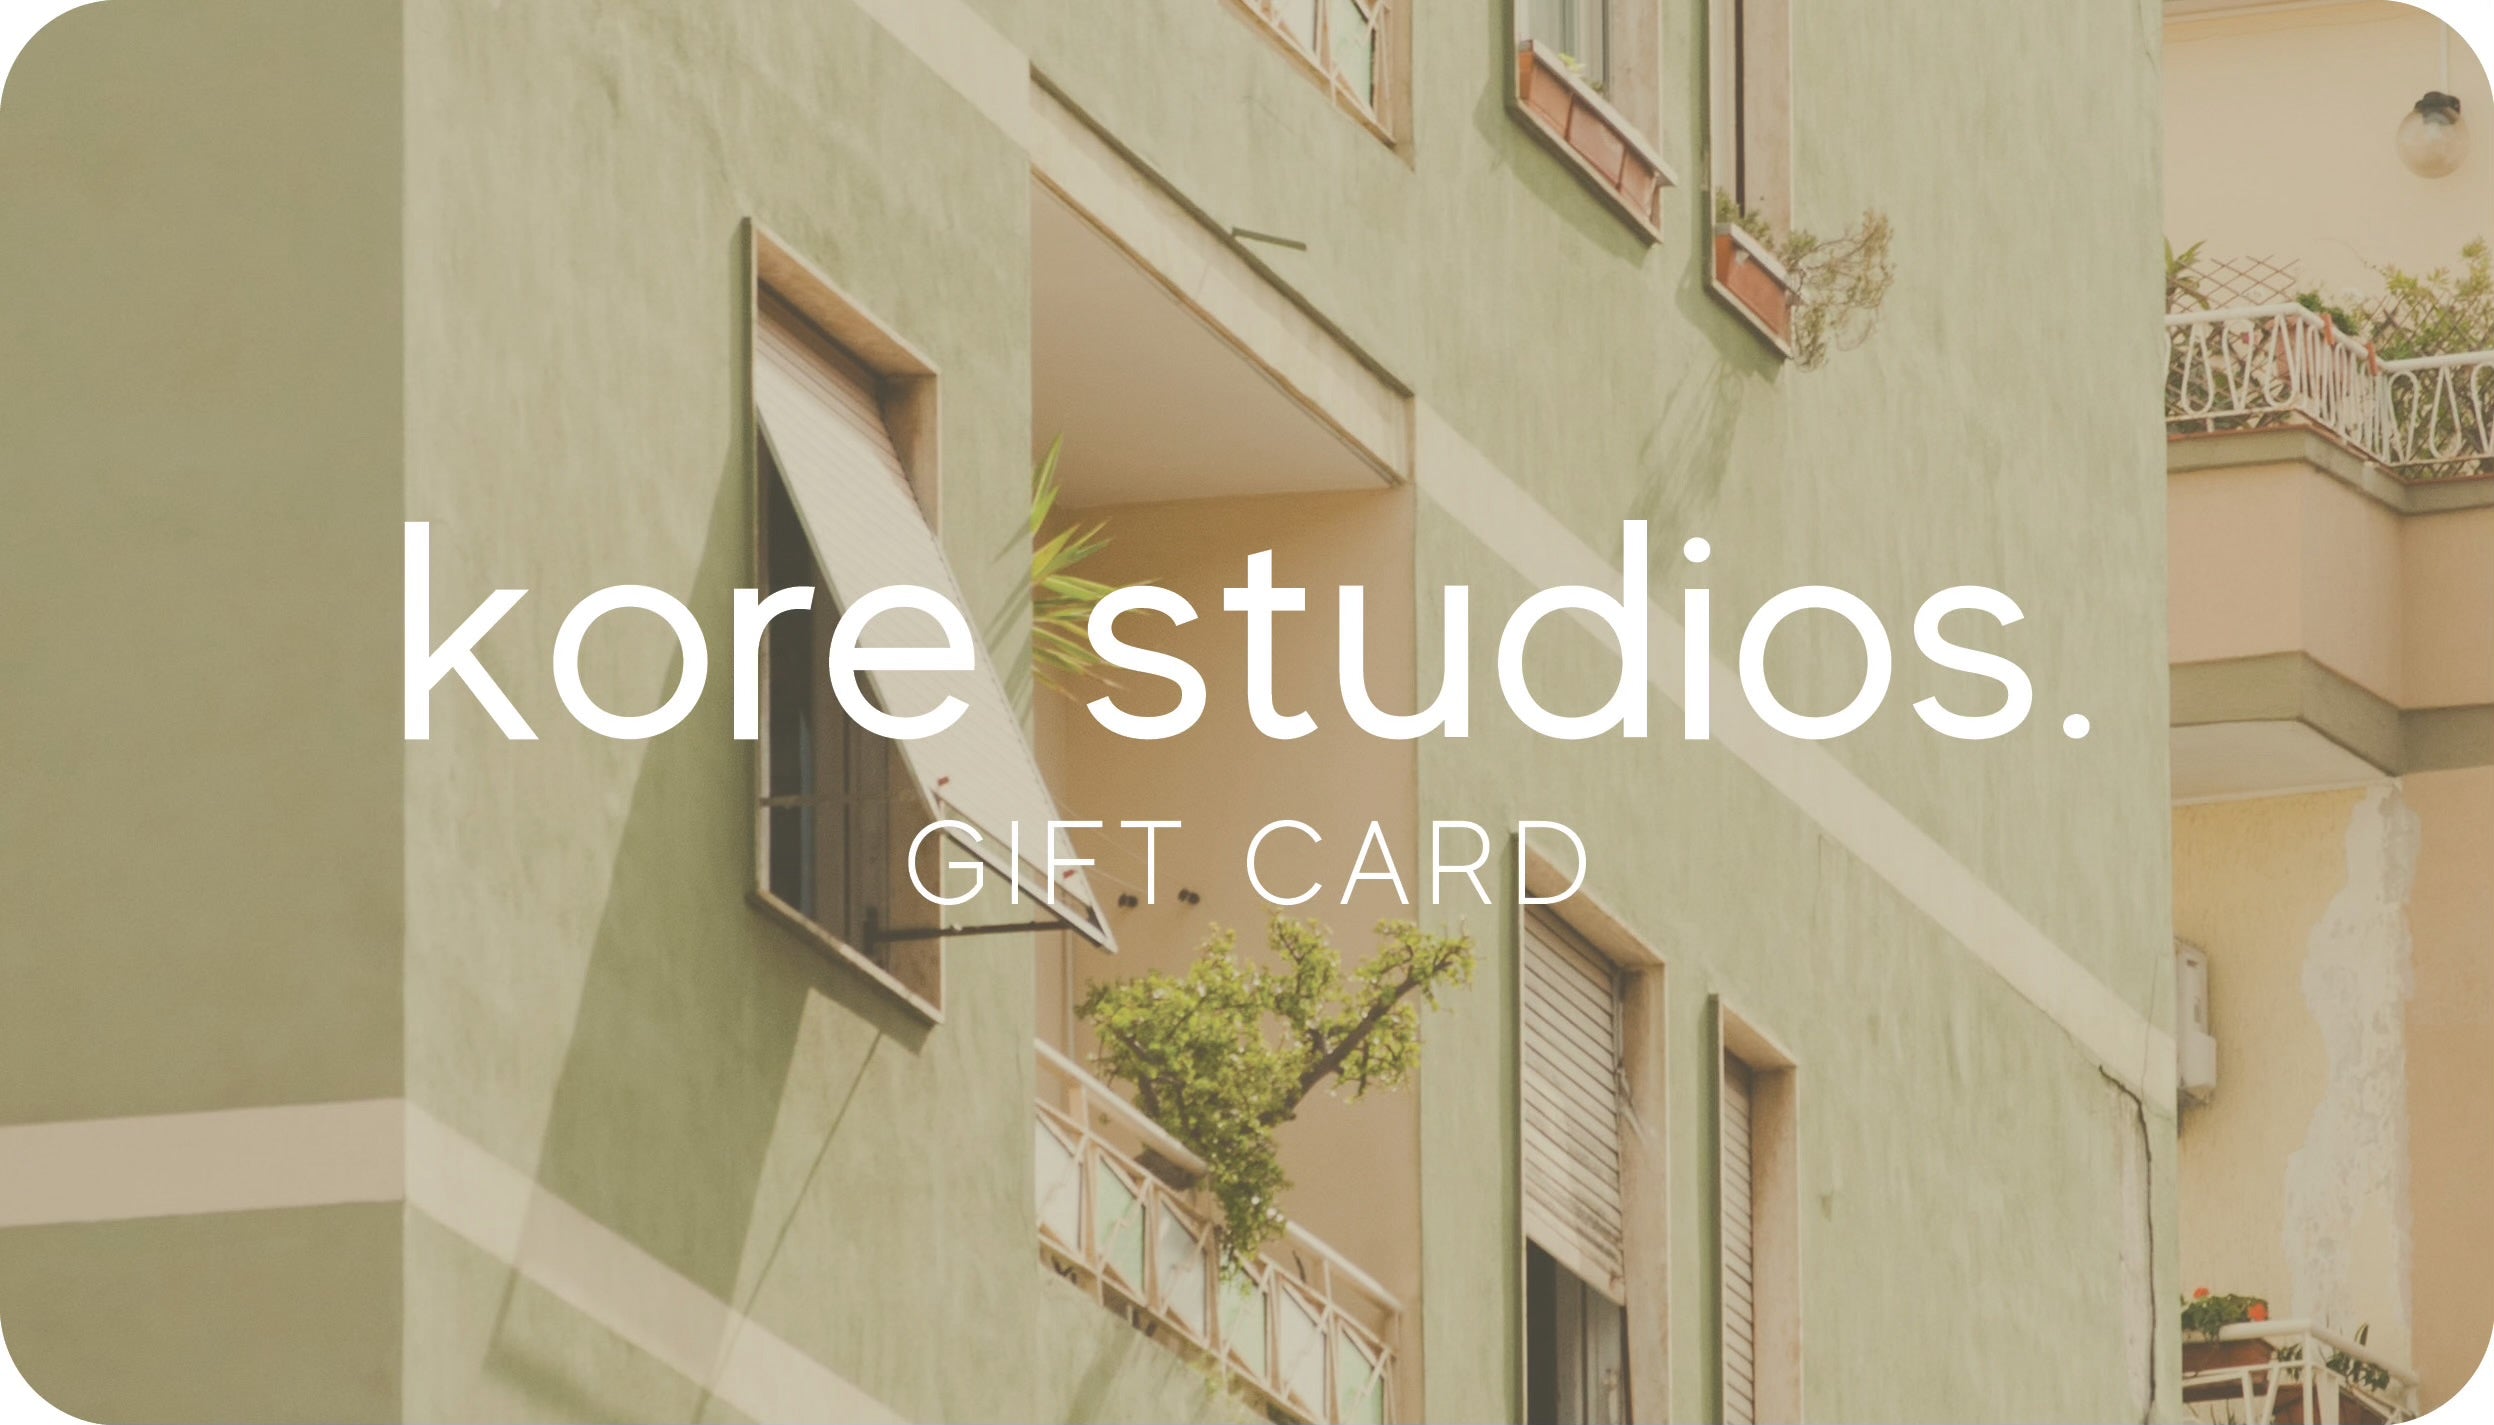 Kore Studios Gift Card